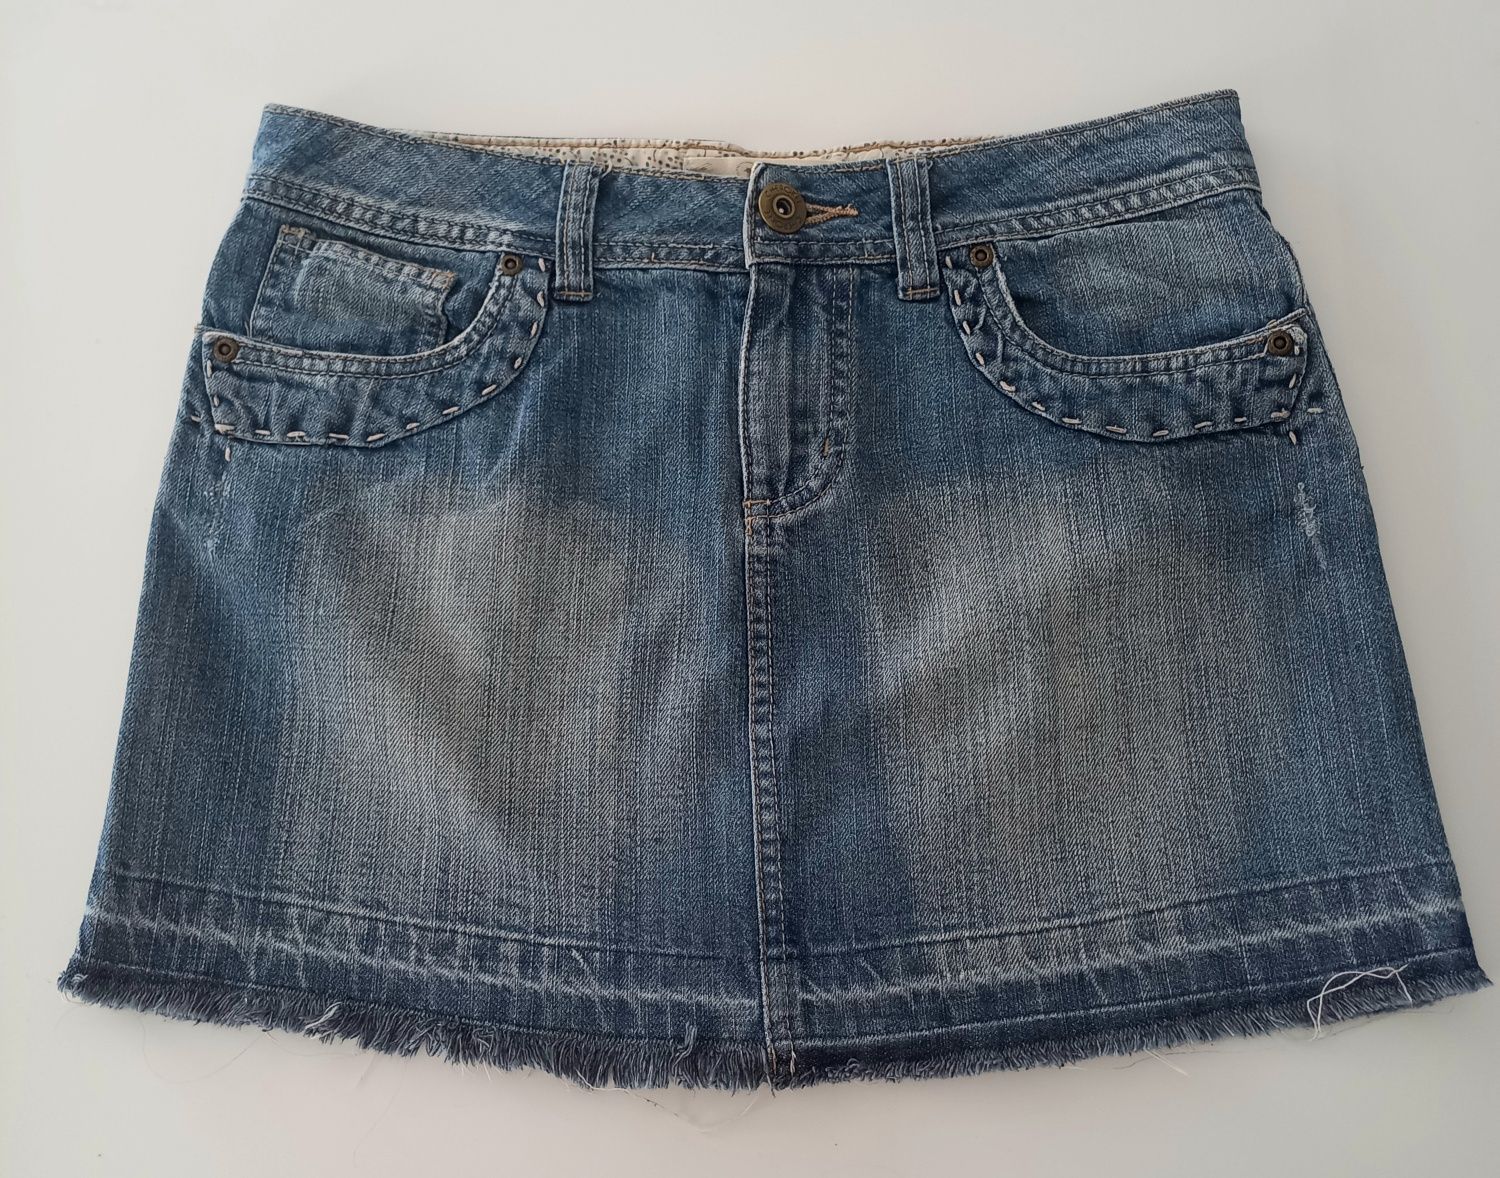 Spódnica jeansowa mini - r. S/36